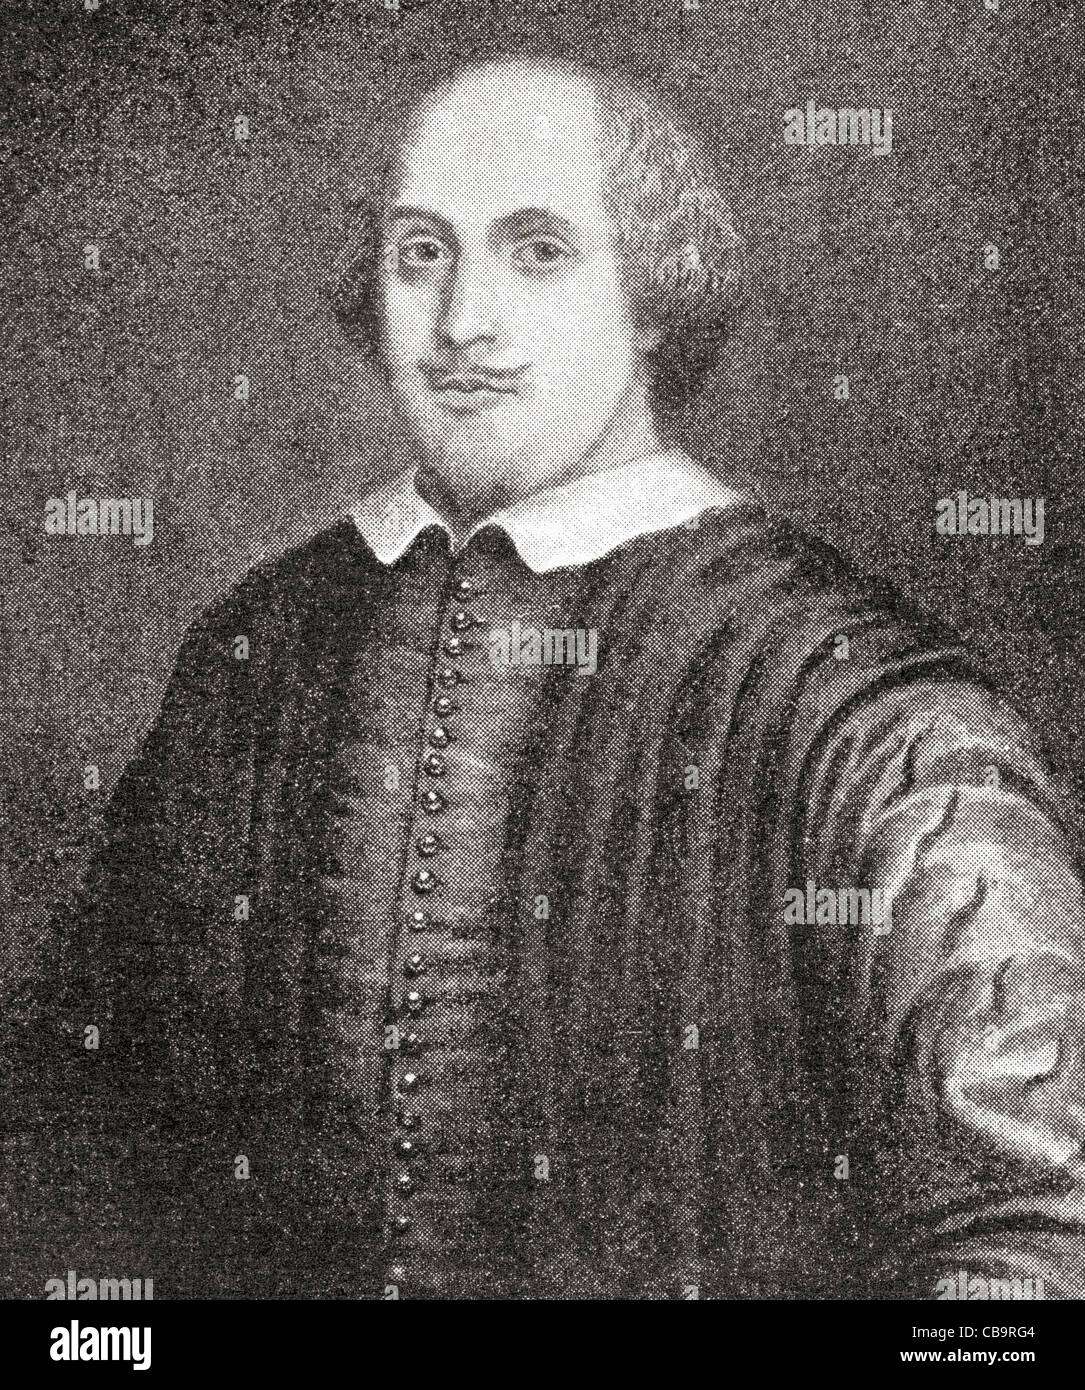 William Shakespeare, 1564 - 1616. Inglese poeta e drammaturgo. Noto come il ritratto di Stratford. Foto Stock